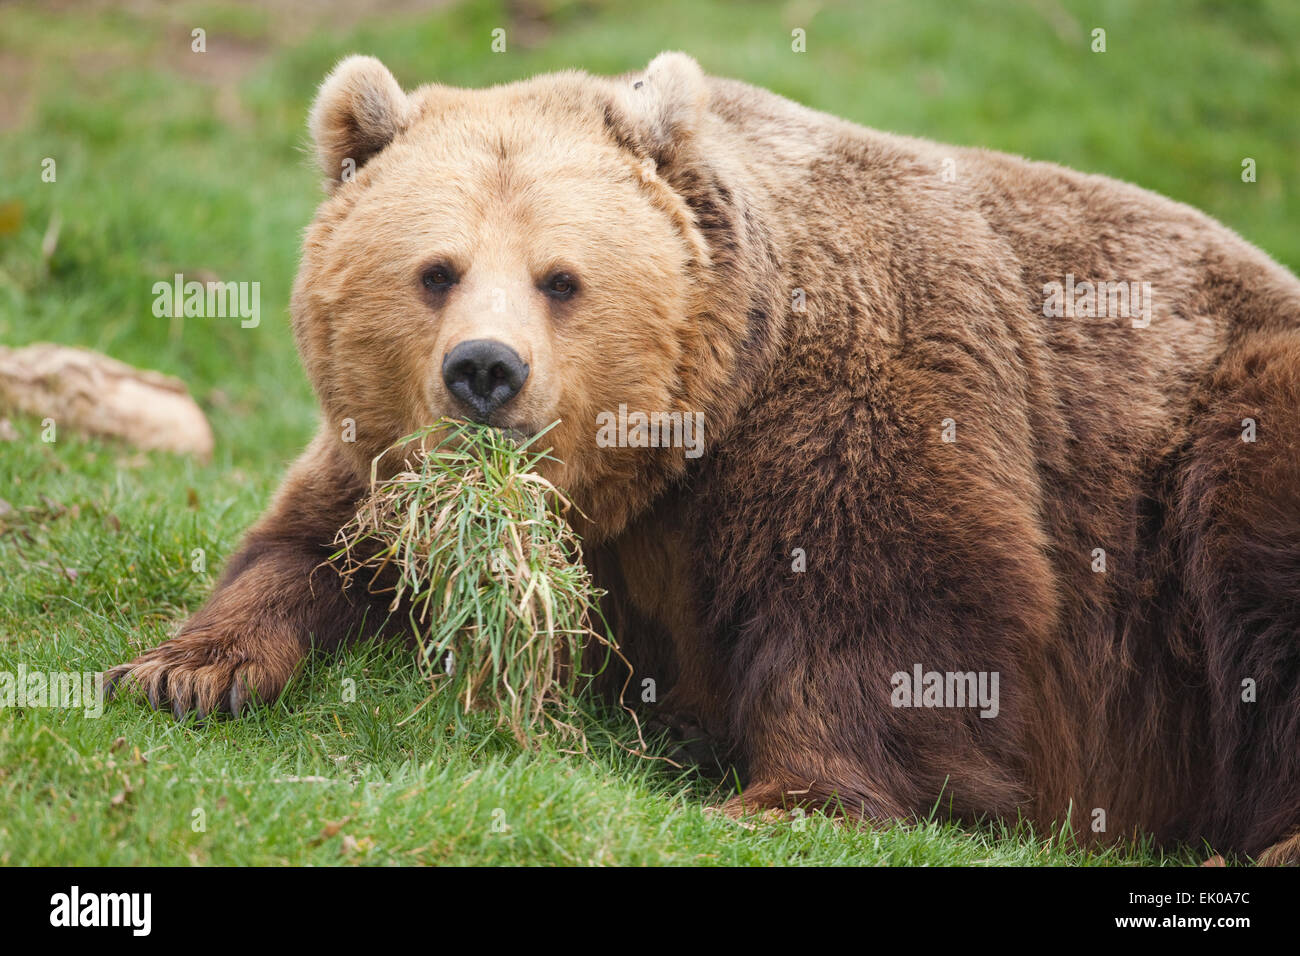 Europäischer Braunbär (Ursus Arctos Arctos). Allesfresser Natur des Tieres beschrieben als Fleischfresser gezeigt von Grass im Mund gehalten. Stockfoto